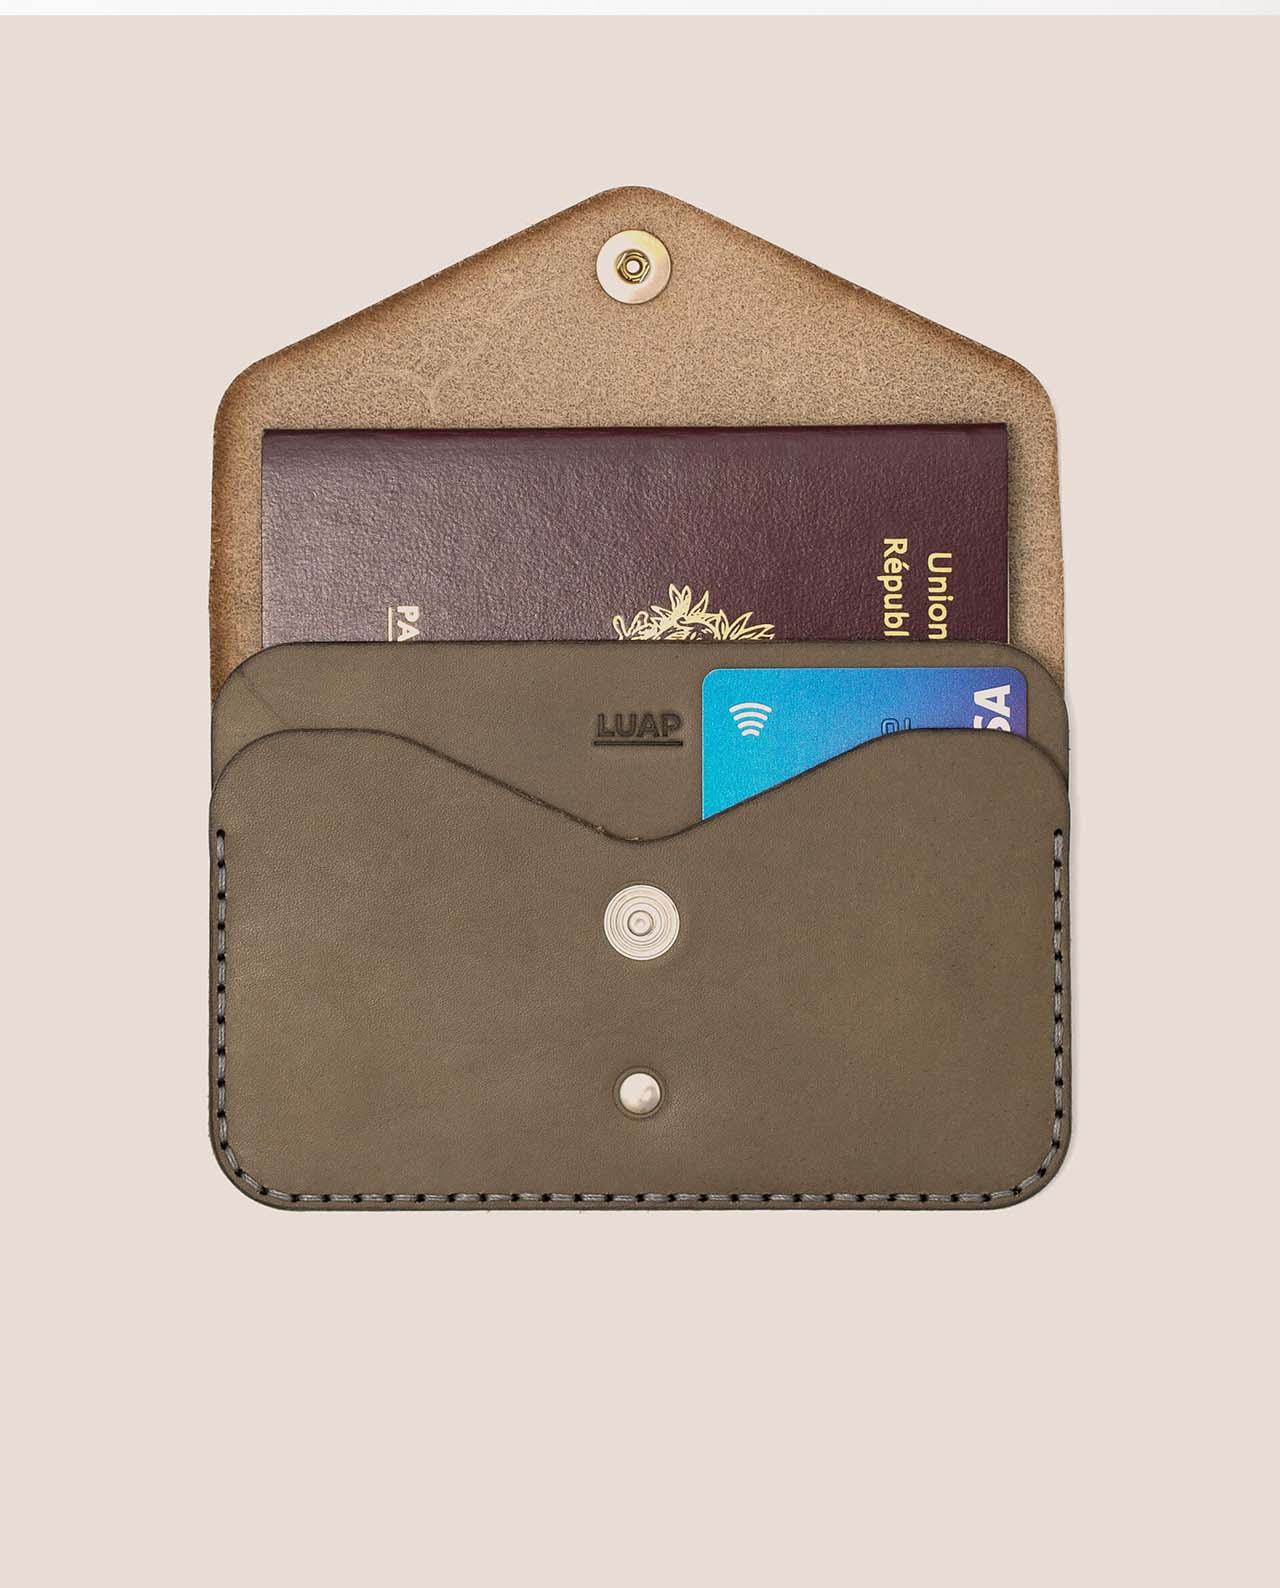 Porte-passeport en cuir tannage végétal